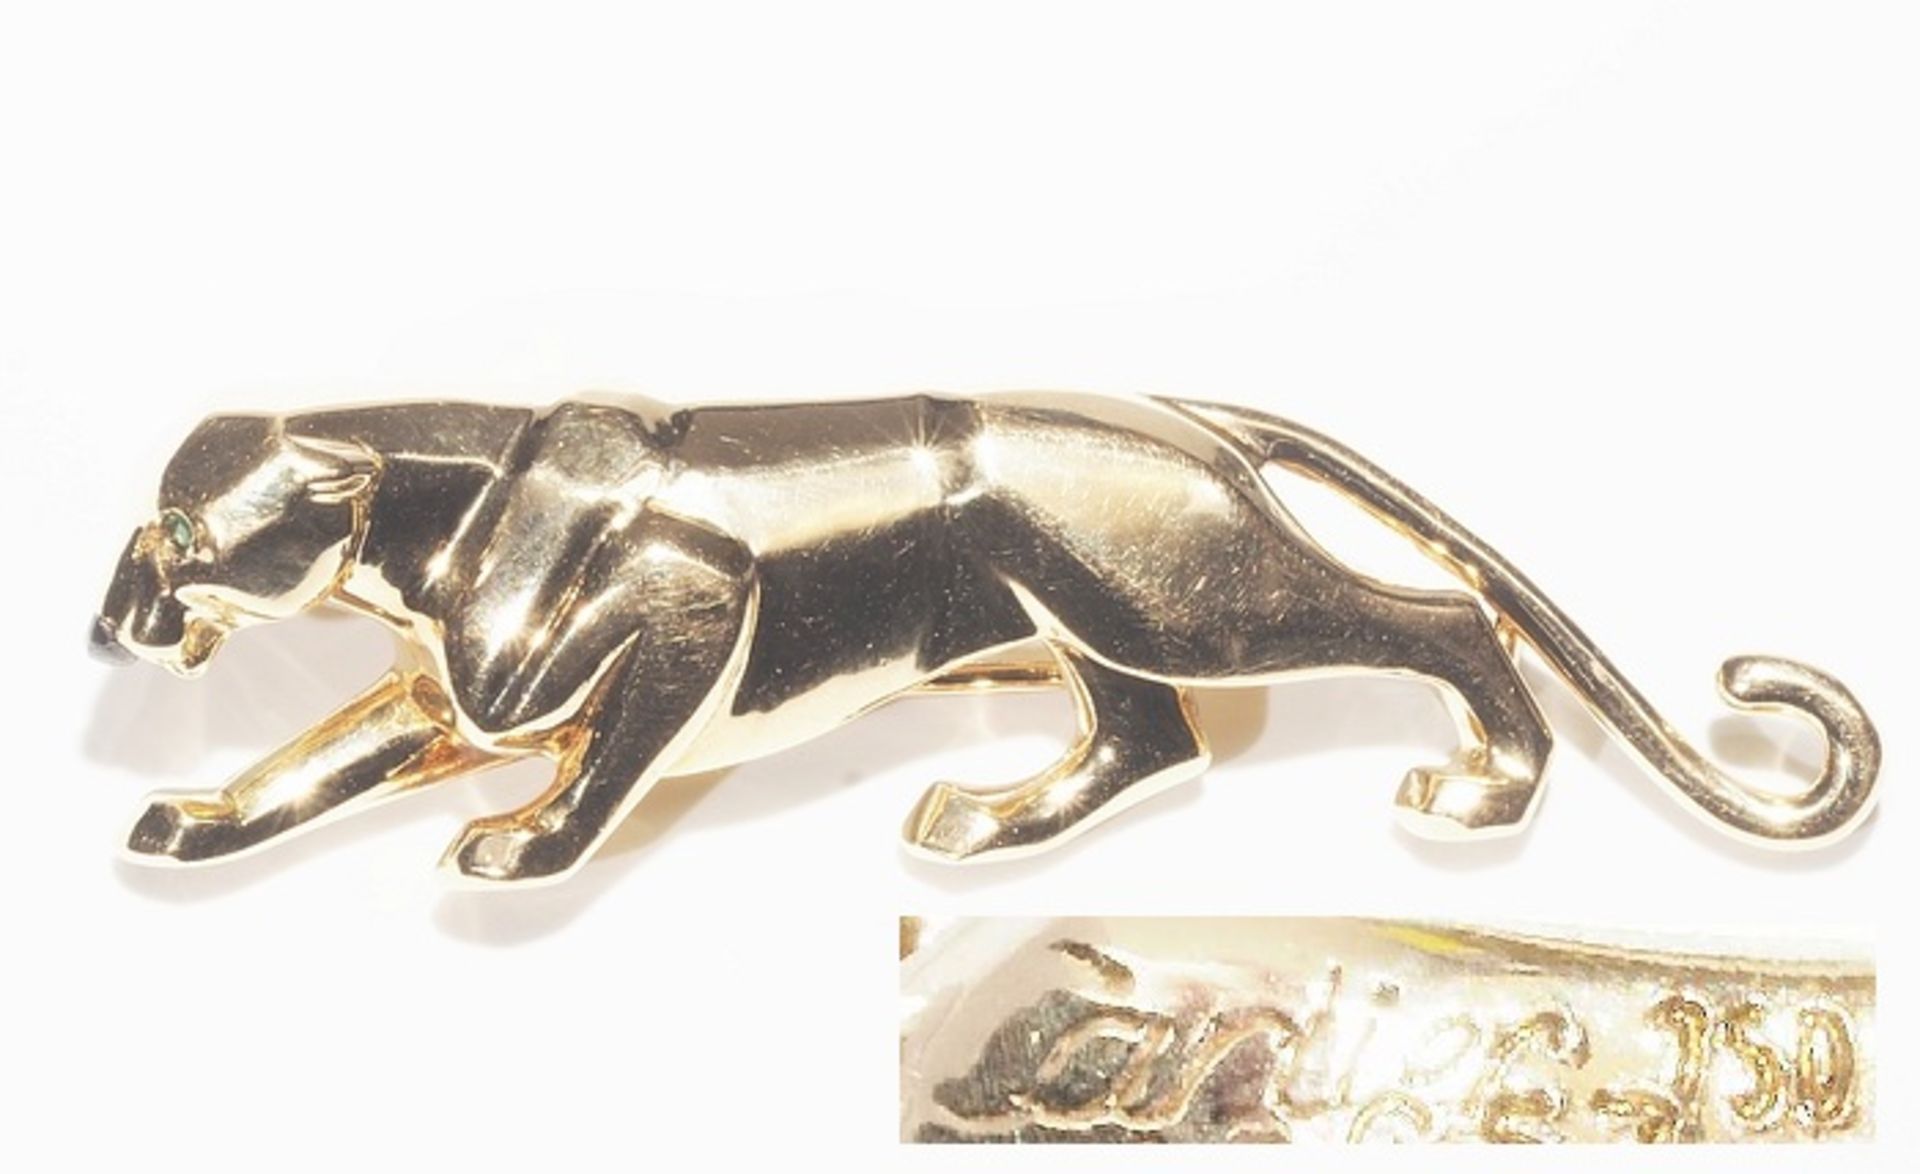 Vintage Brosche "Panther", CARTIER, signiert, Referenznummer 648653. 750er Gelbgold, schwarze Nase